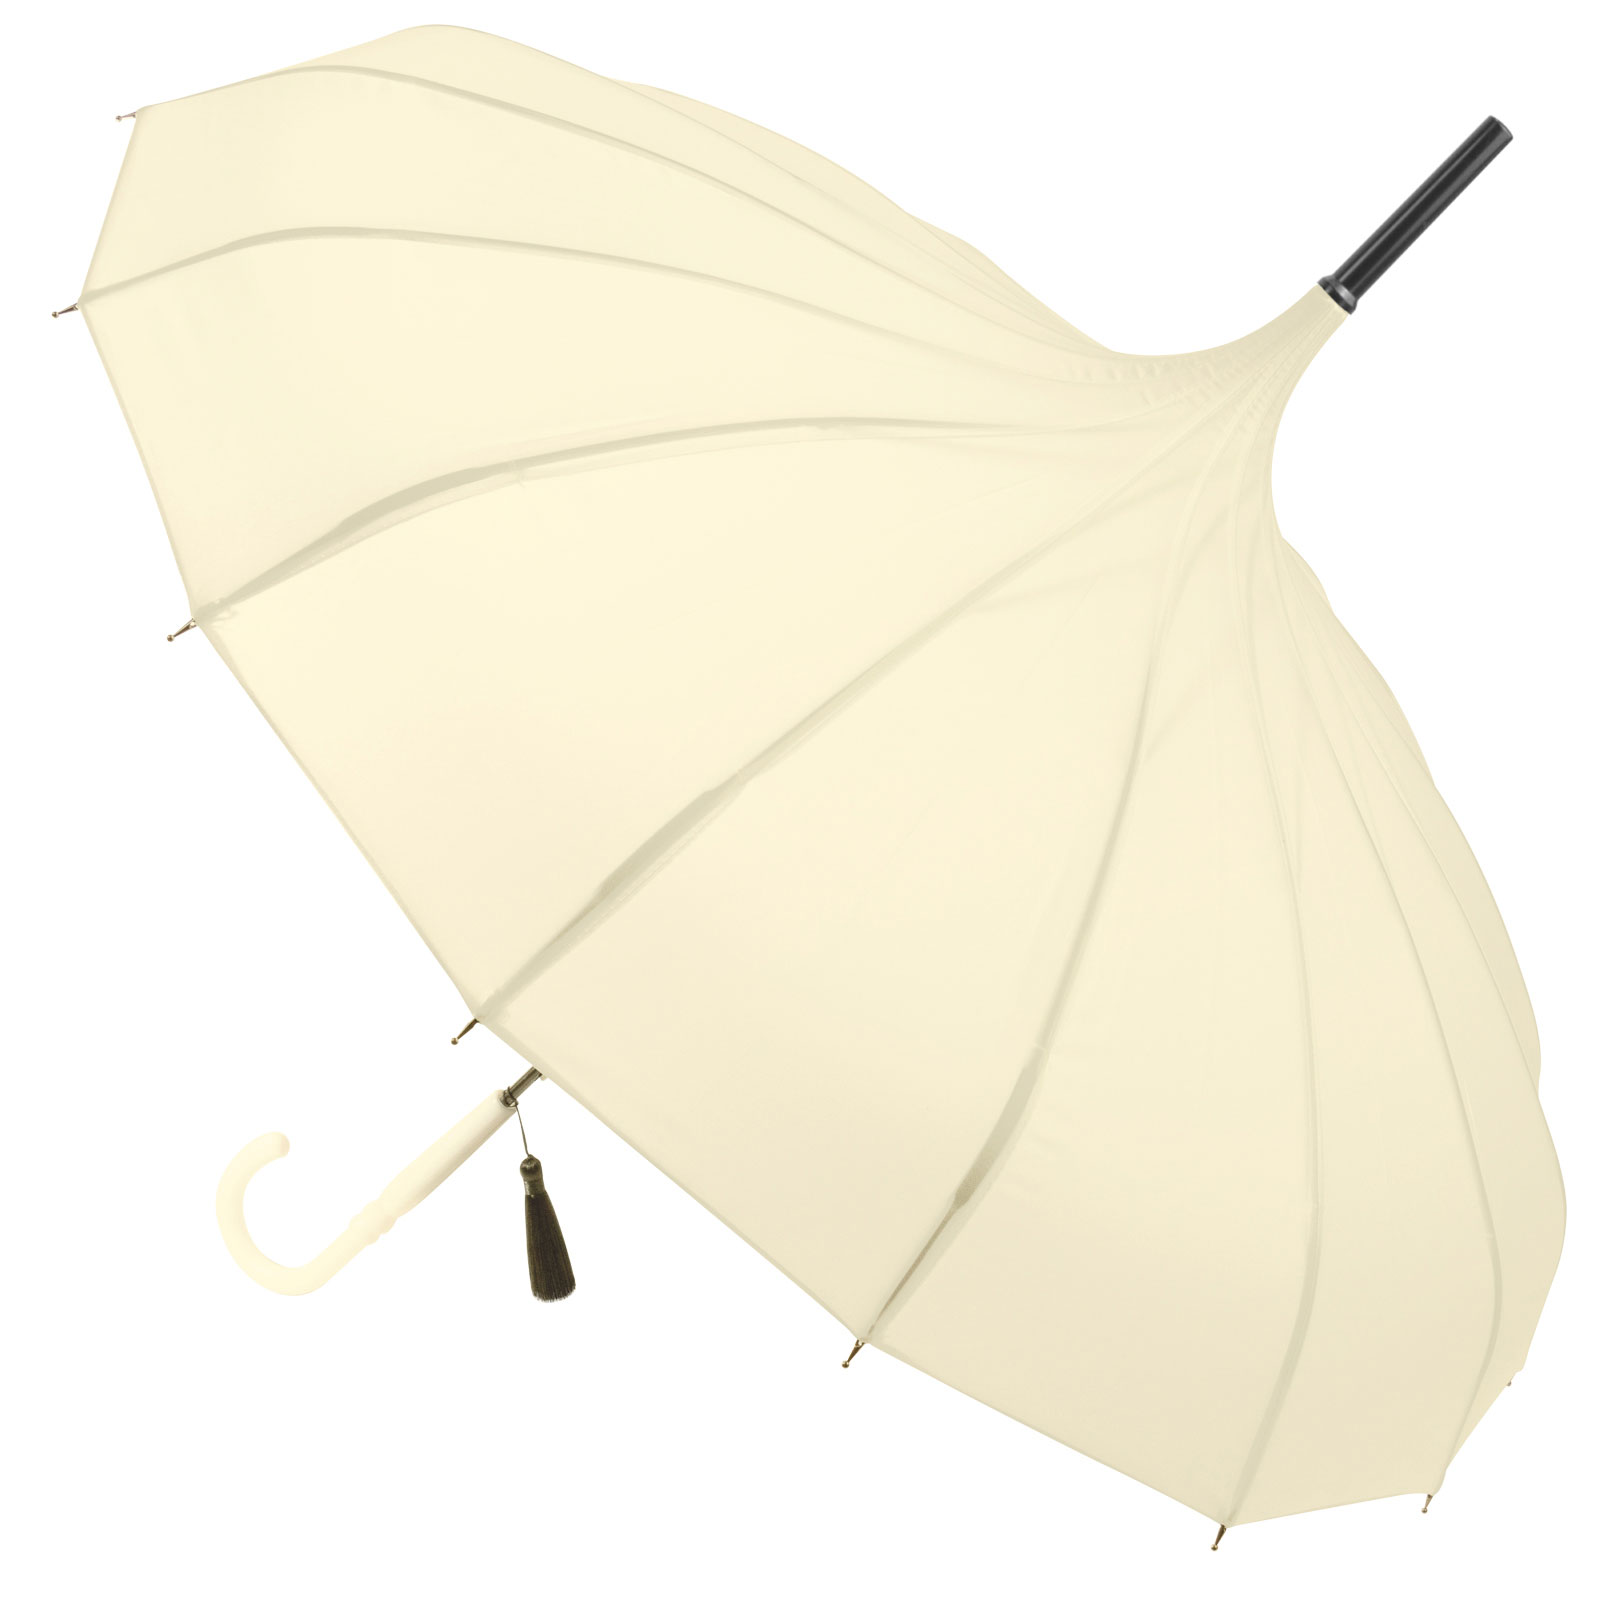 Classic Pagoda Umbrella from Soake - Cream